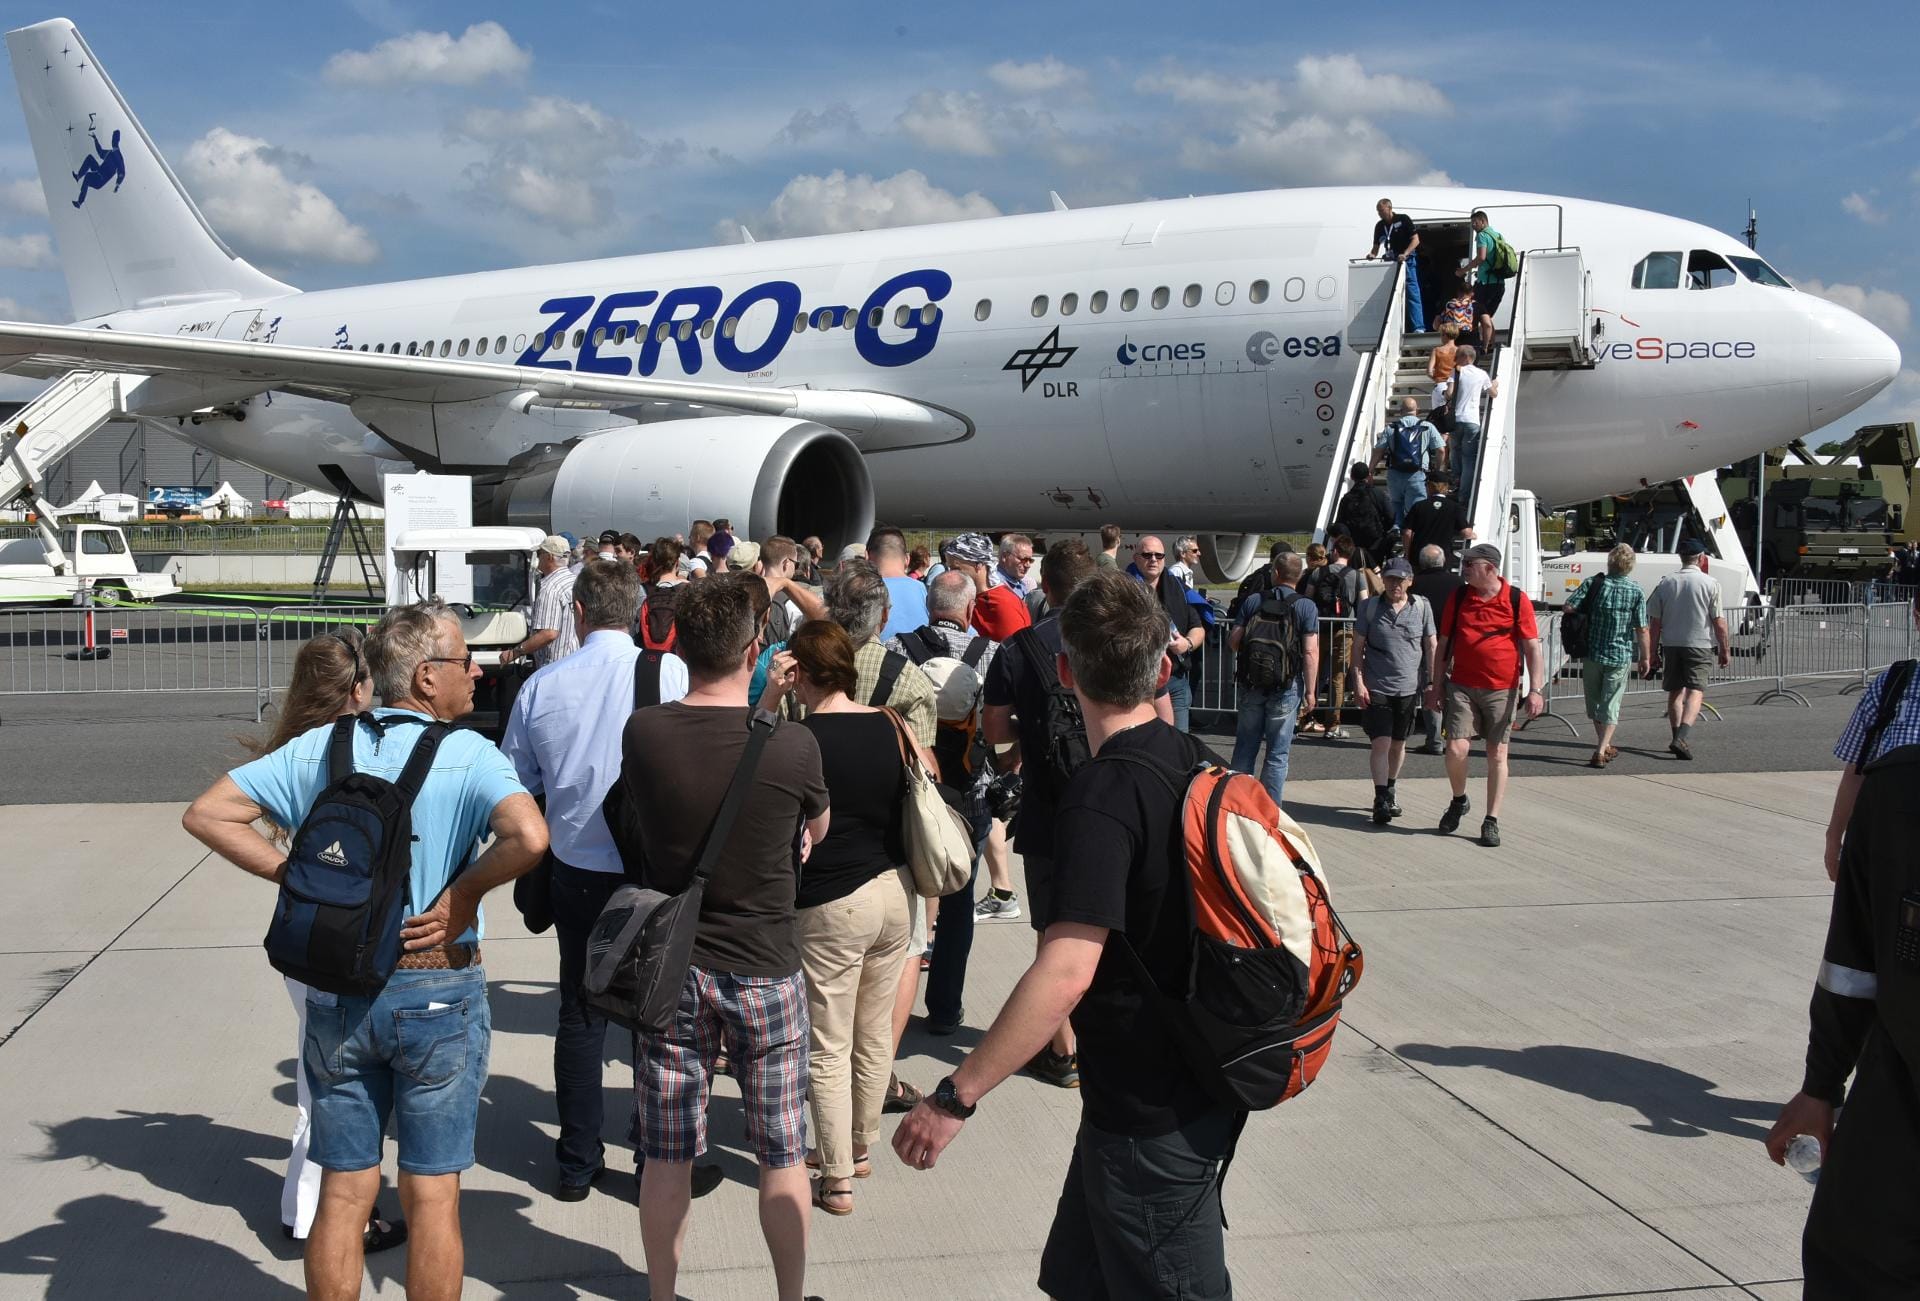 Ein bekannter Anbieter von Parabelflügen ist der französischen Anbieter Air Zero G. Für 6000 Euro heben Passagiere in Südfrankreich mit einem Airbus A310 ab.